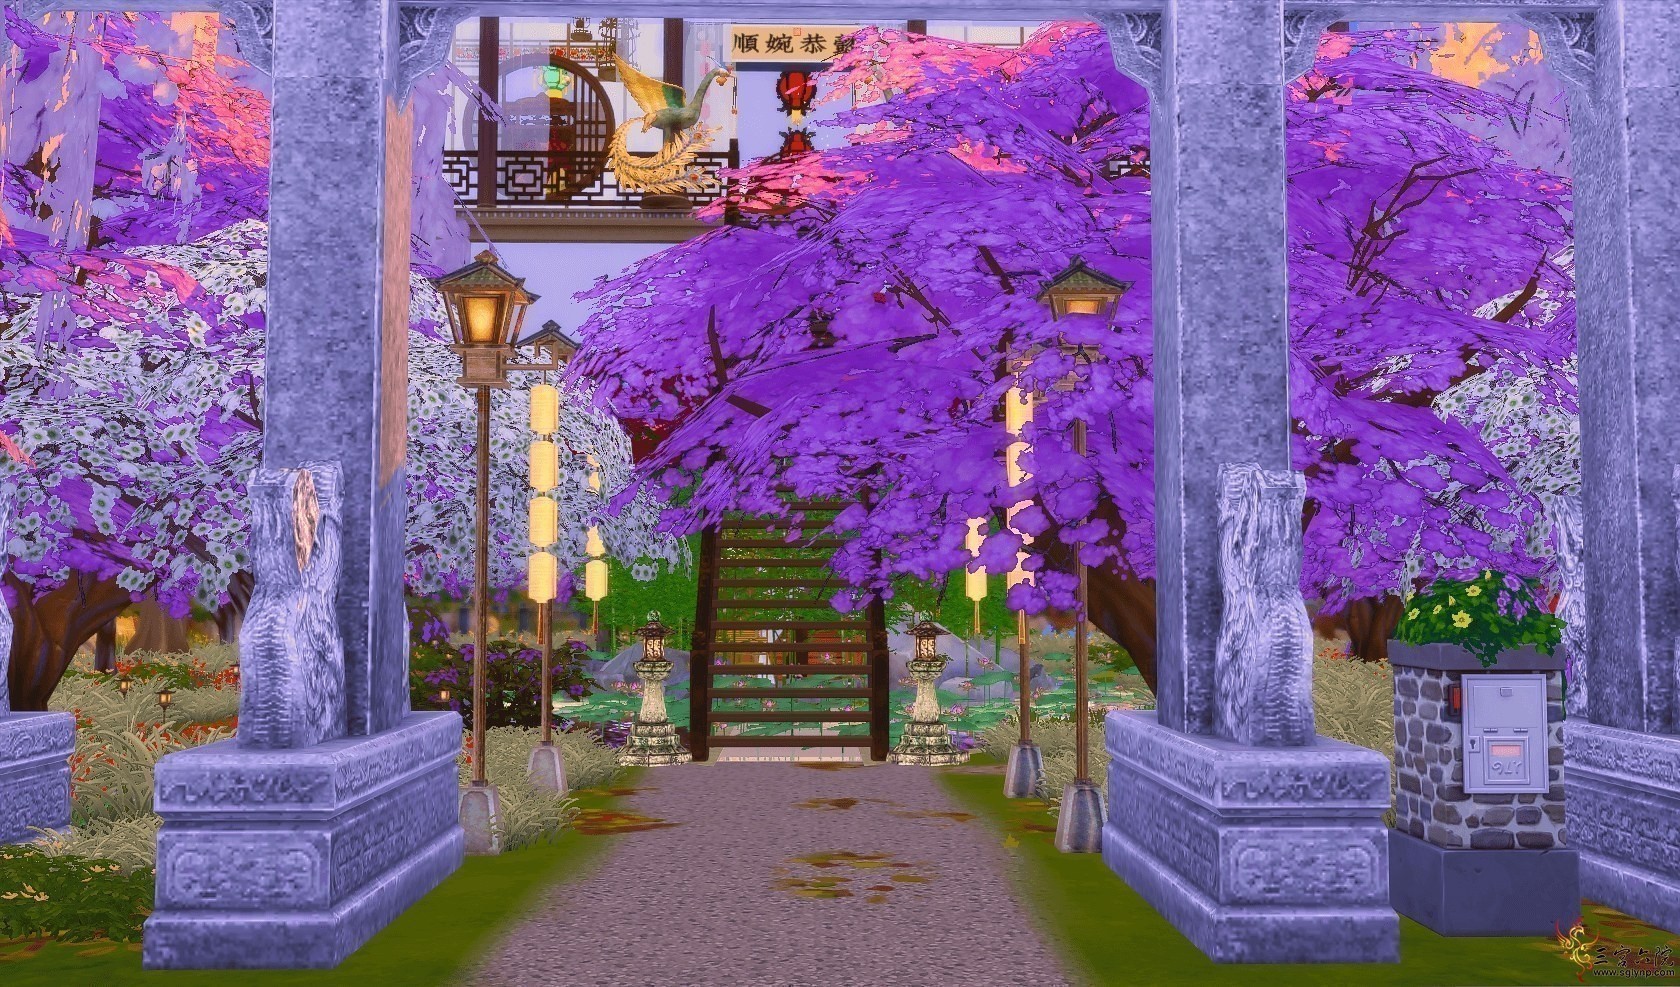 Sims 4 Screenshot 2020.05.19 - 15.48.41.65.png